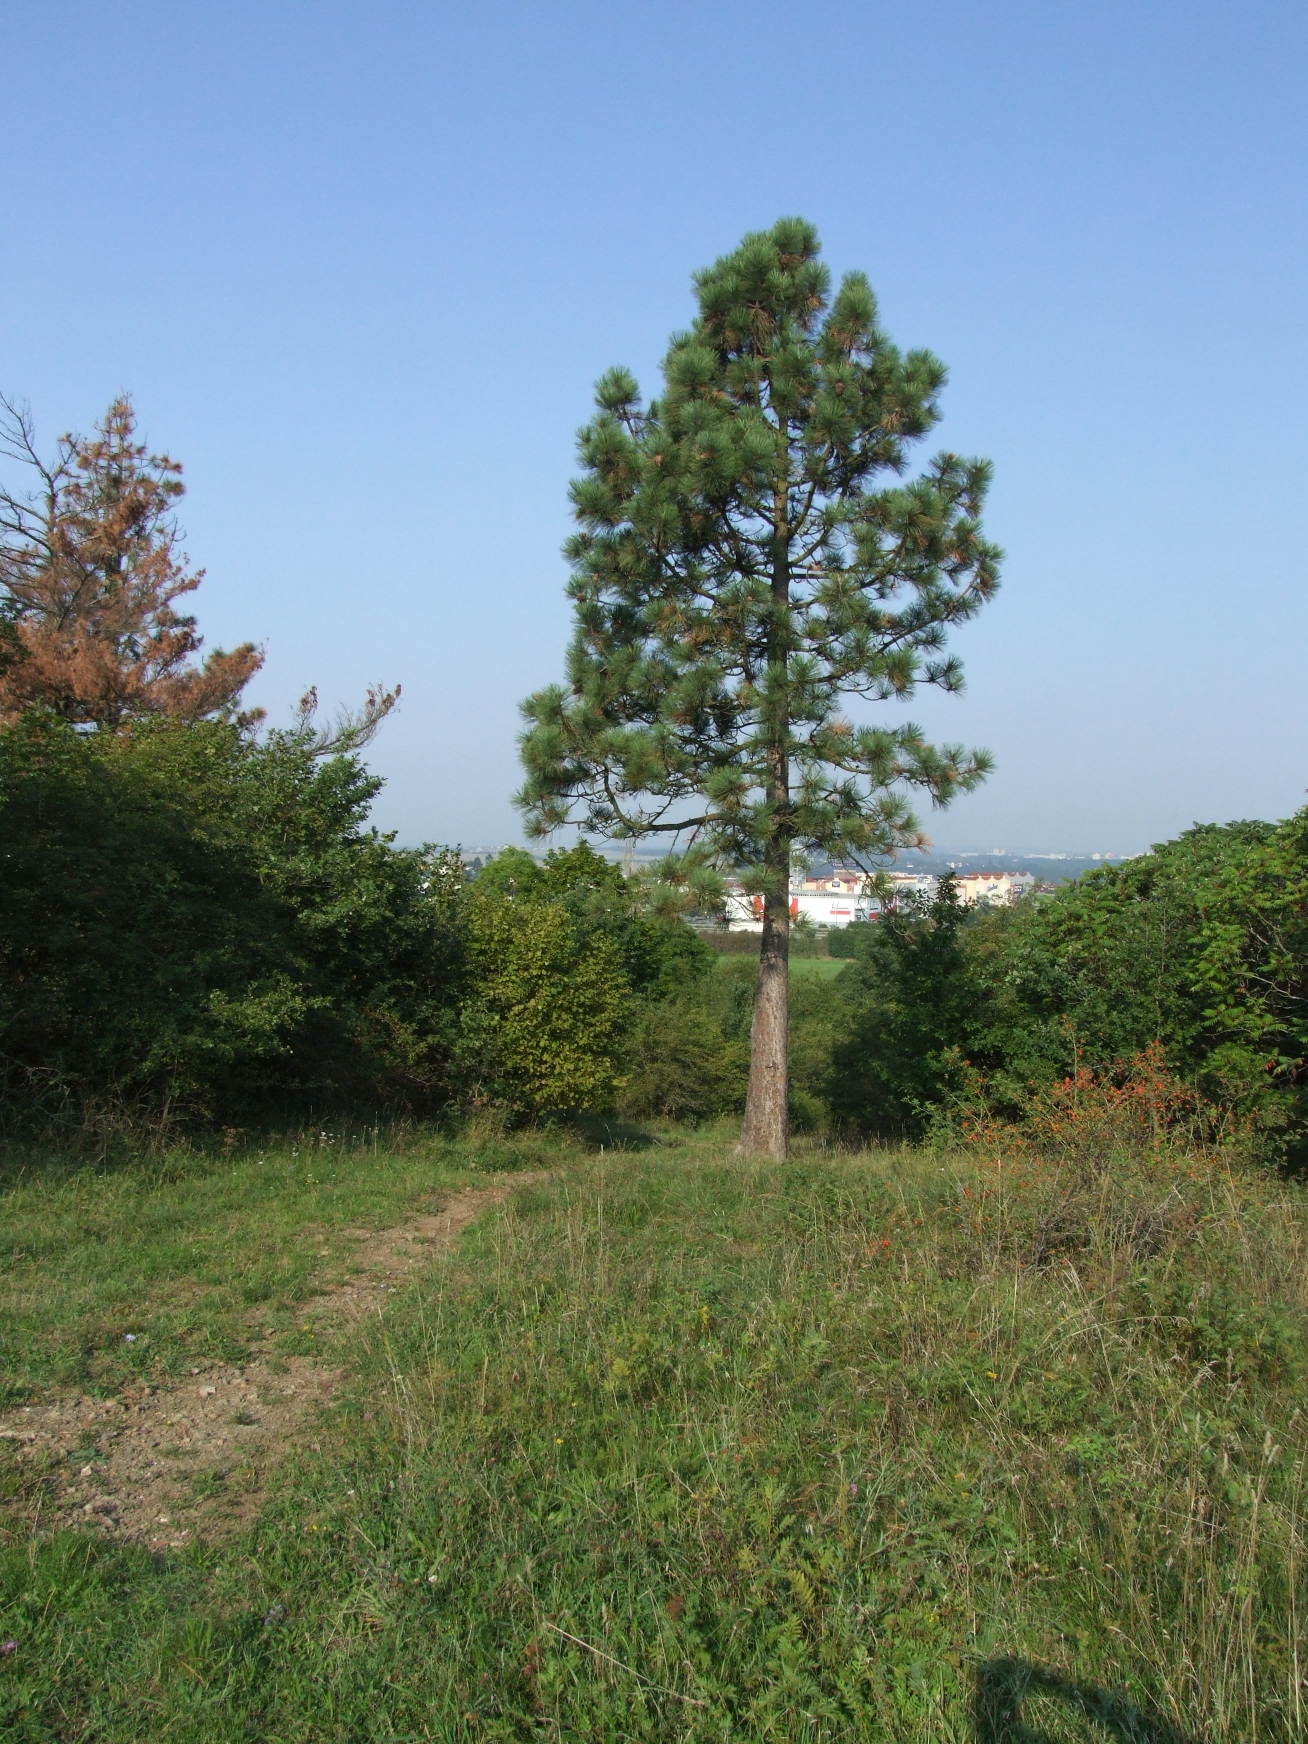 <h1>Borovice těžká <i>(Pinus ponderosa). </i></h1><br />Fotografii dominuje vzrostlá borovice těžká s hustou kuželovitou korunou. V popředí fotografie se nachází travní porost, pozadí tvoří křoviny a pohled na Plzeň.